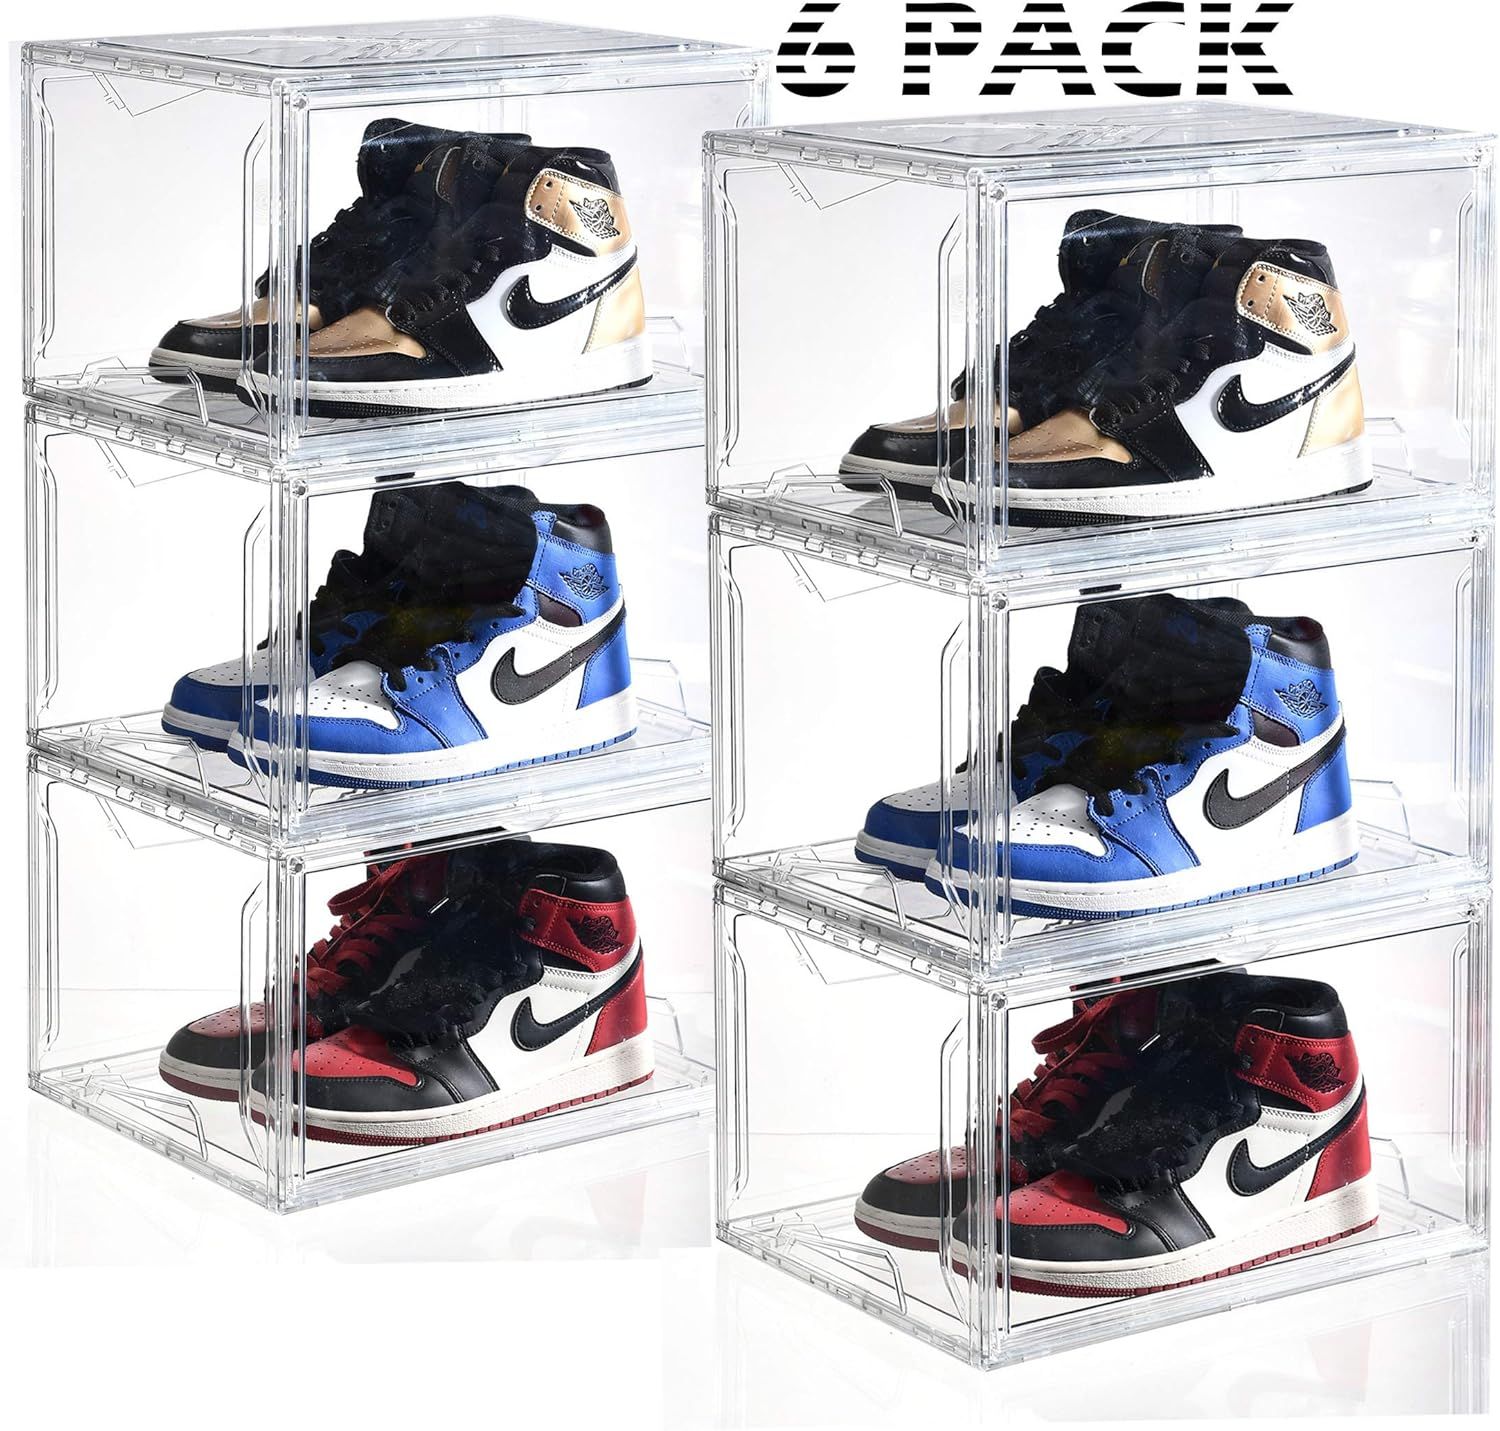 AltraTech Shoe Organizer 6 Pack Drop-Front Shoe Box L14.2" x W11" x H8.7" Super Large Size Shoe O... | Amazon (US)